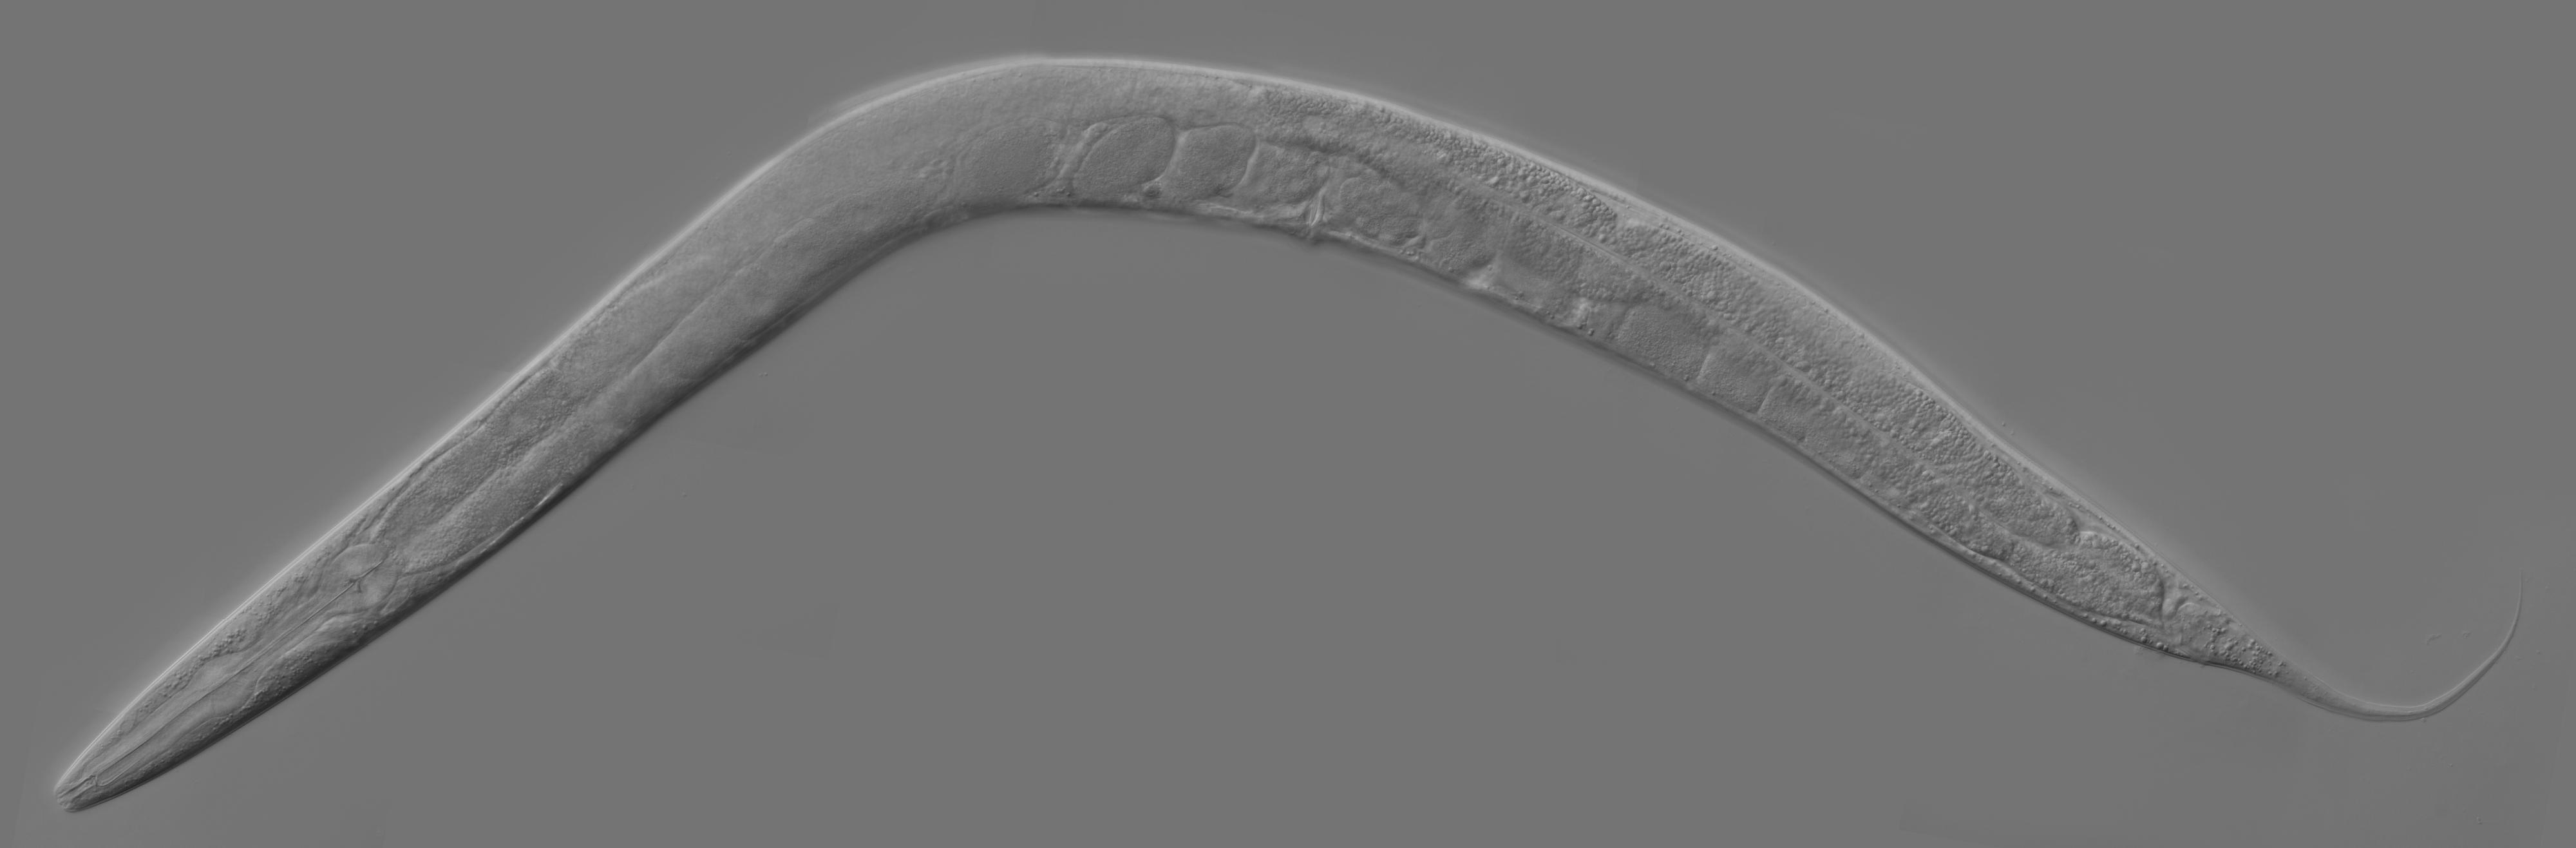 Slik ser en levende C elegans-rundorm ut.Foto: Wikipedia Commons